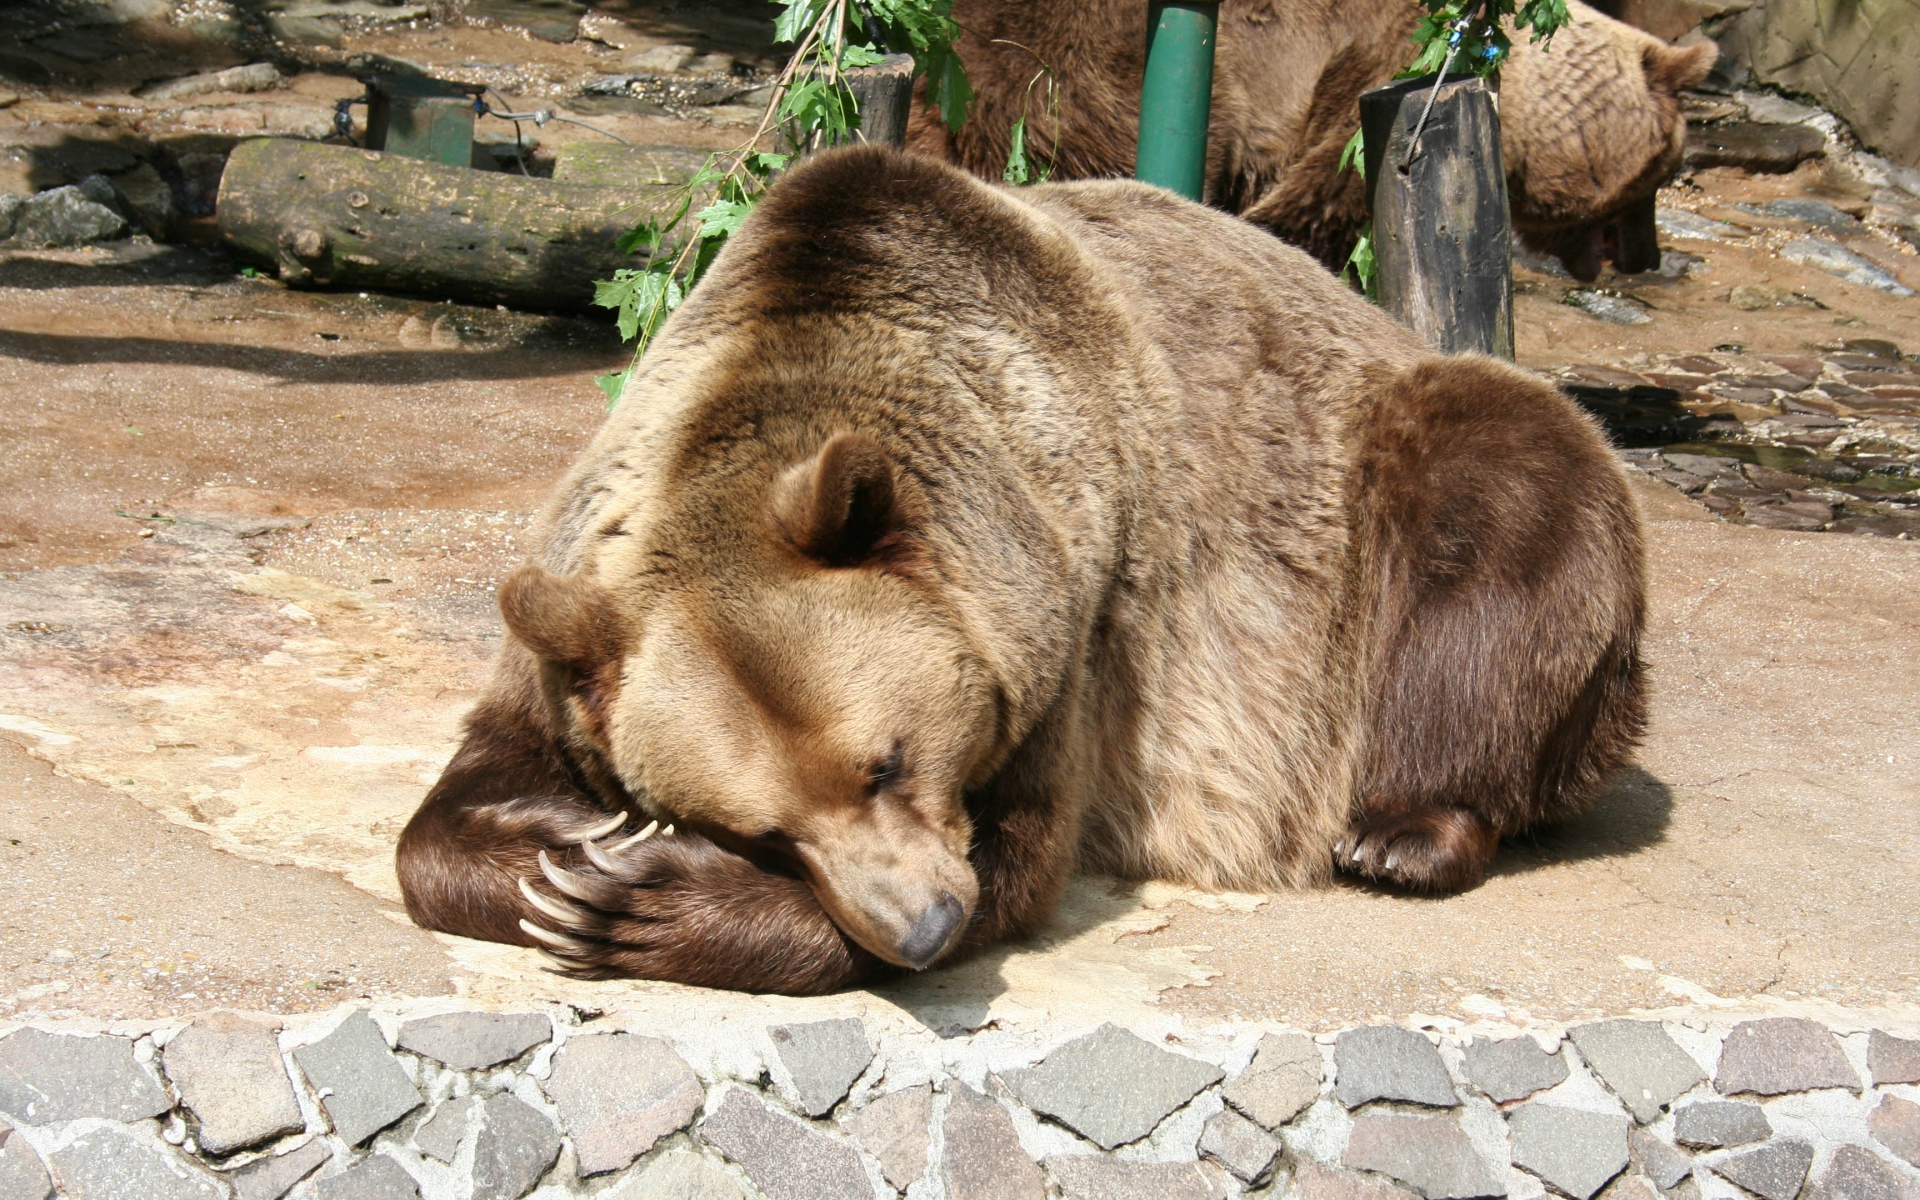 Картинки Медведь, бурый медведь, лежащий, заповедник фото и обои на рабочий стол